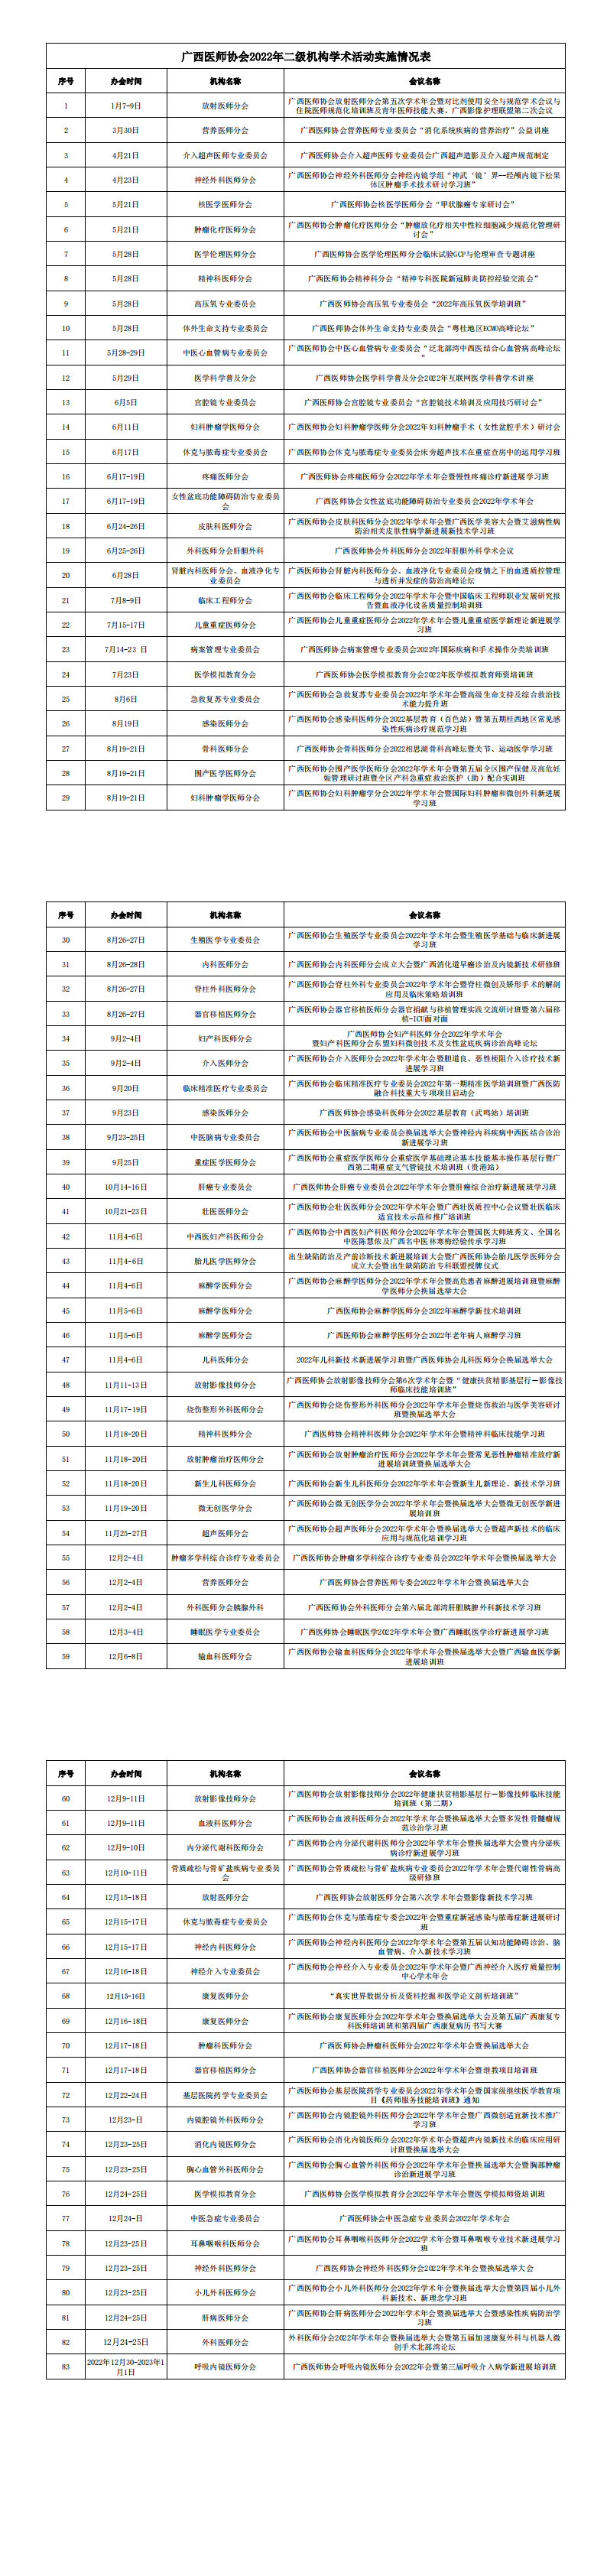 广西医师协会2022年二级机构学术活动实施情况表_00.png